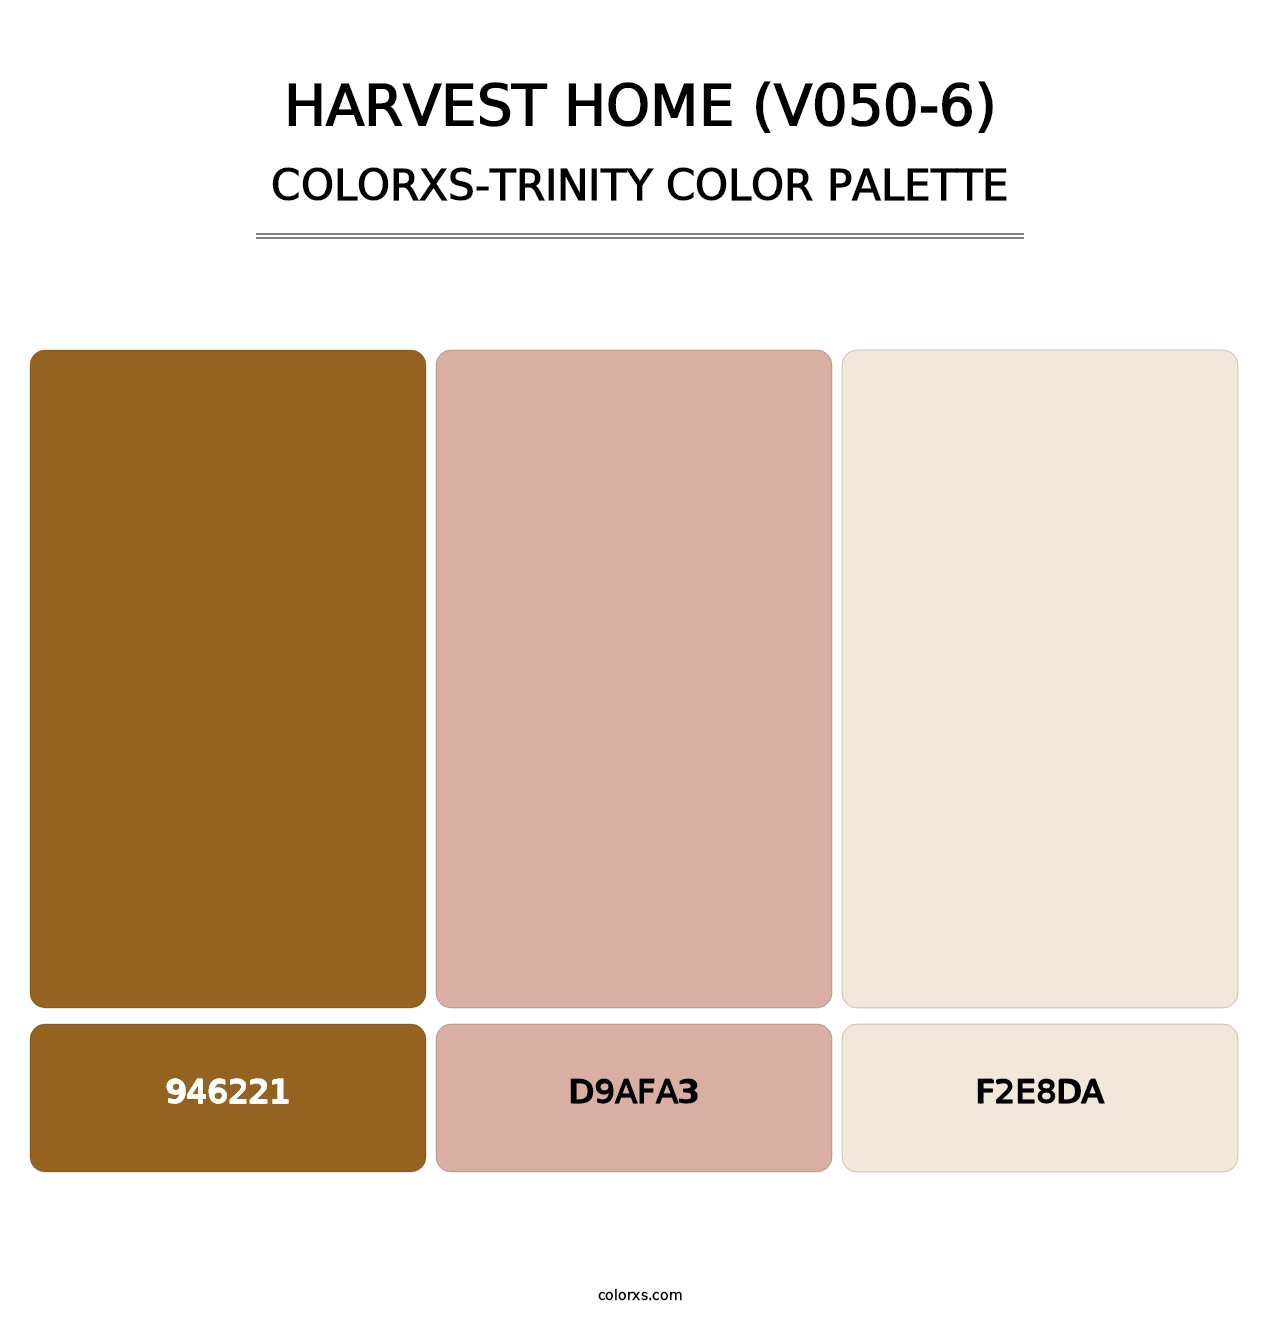 Harvest Home (V050-6) - Colorxs Trinity Palette